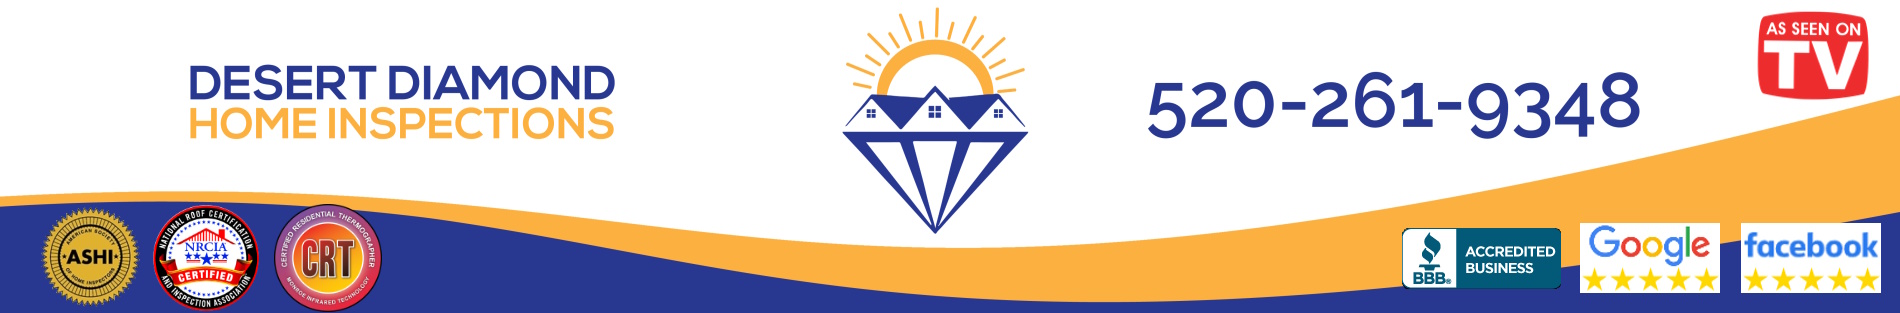 Desert Diamond Home Inspections WordPress Logo Banner